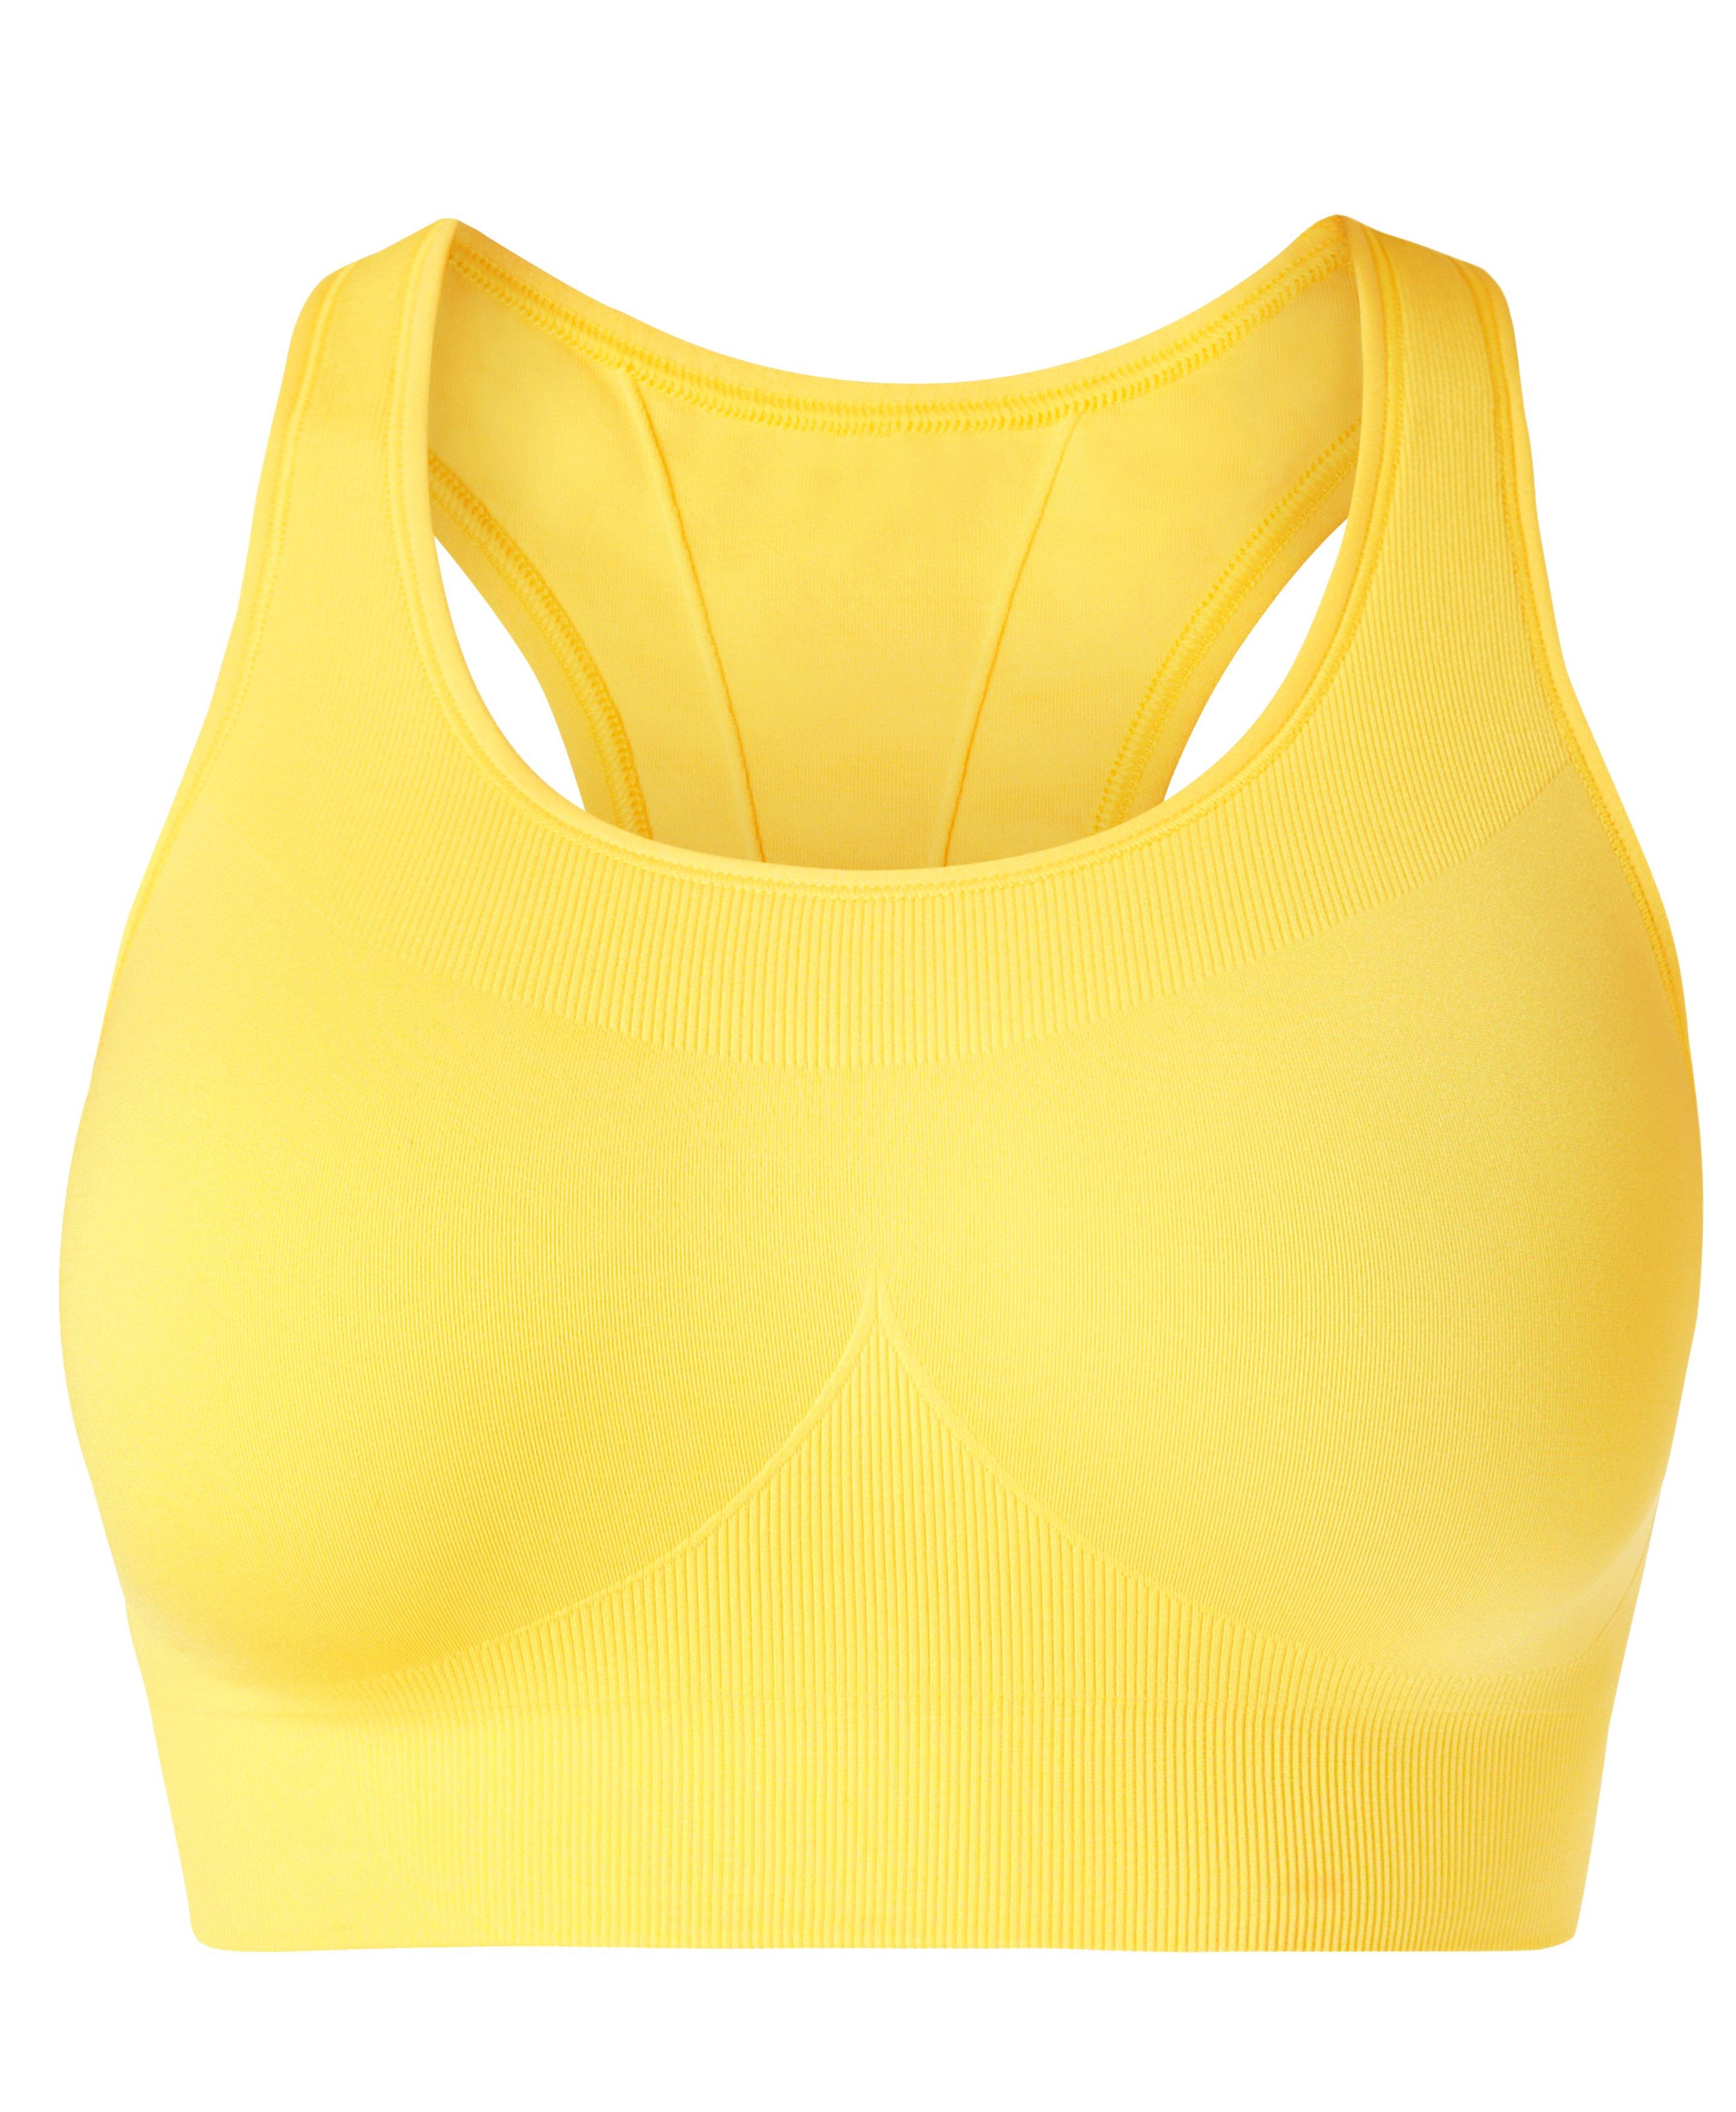 Stamina Sports Bra - Apollo Yellow, Women's Sports Bras